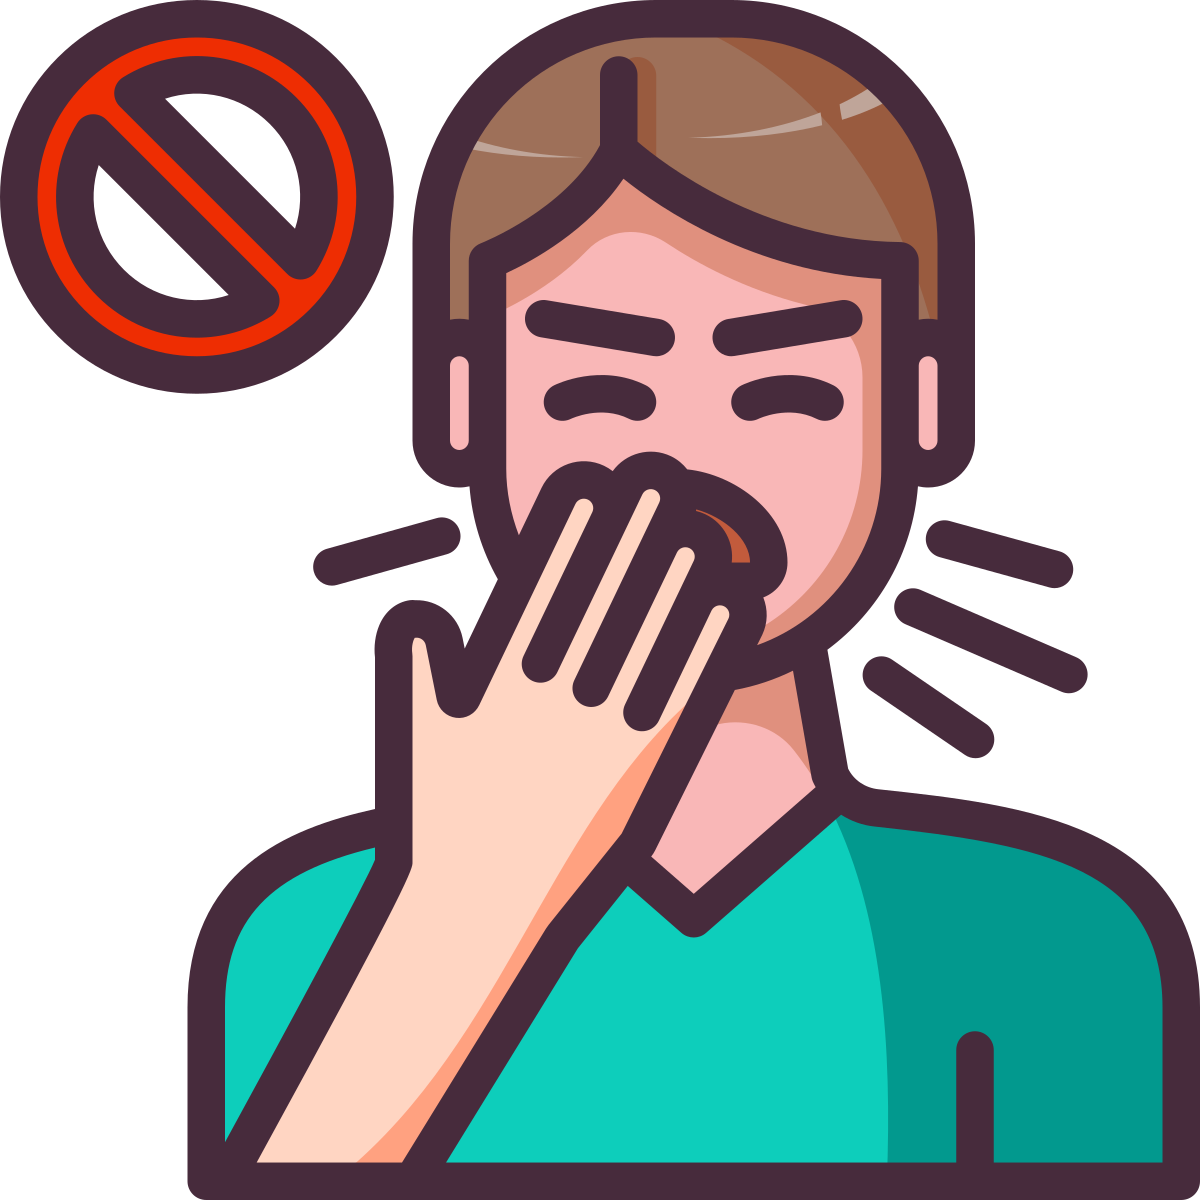 user  cough  cold  breath  sneeze icon icon